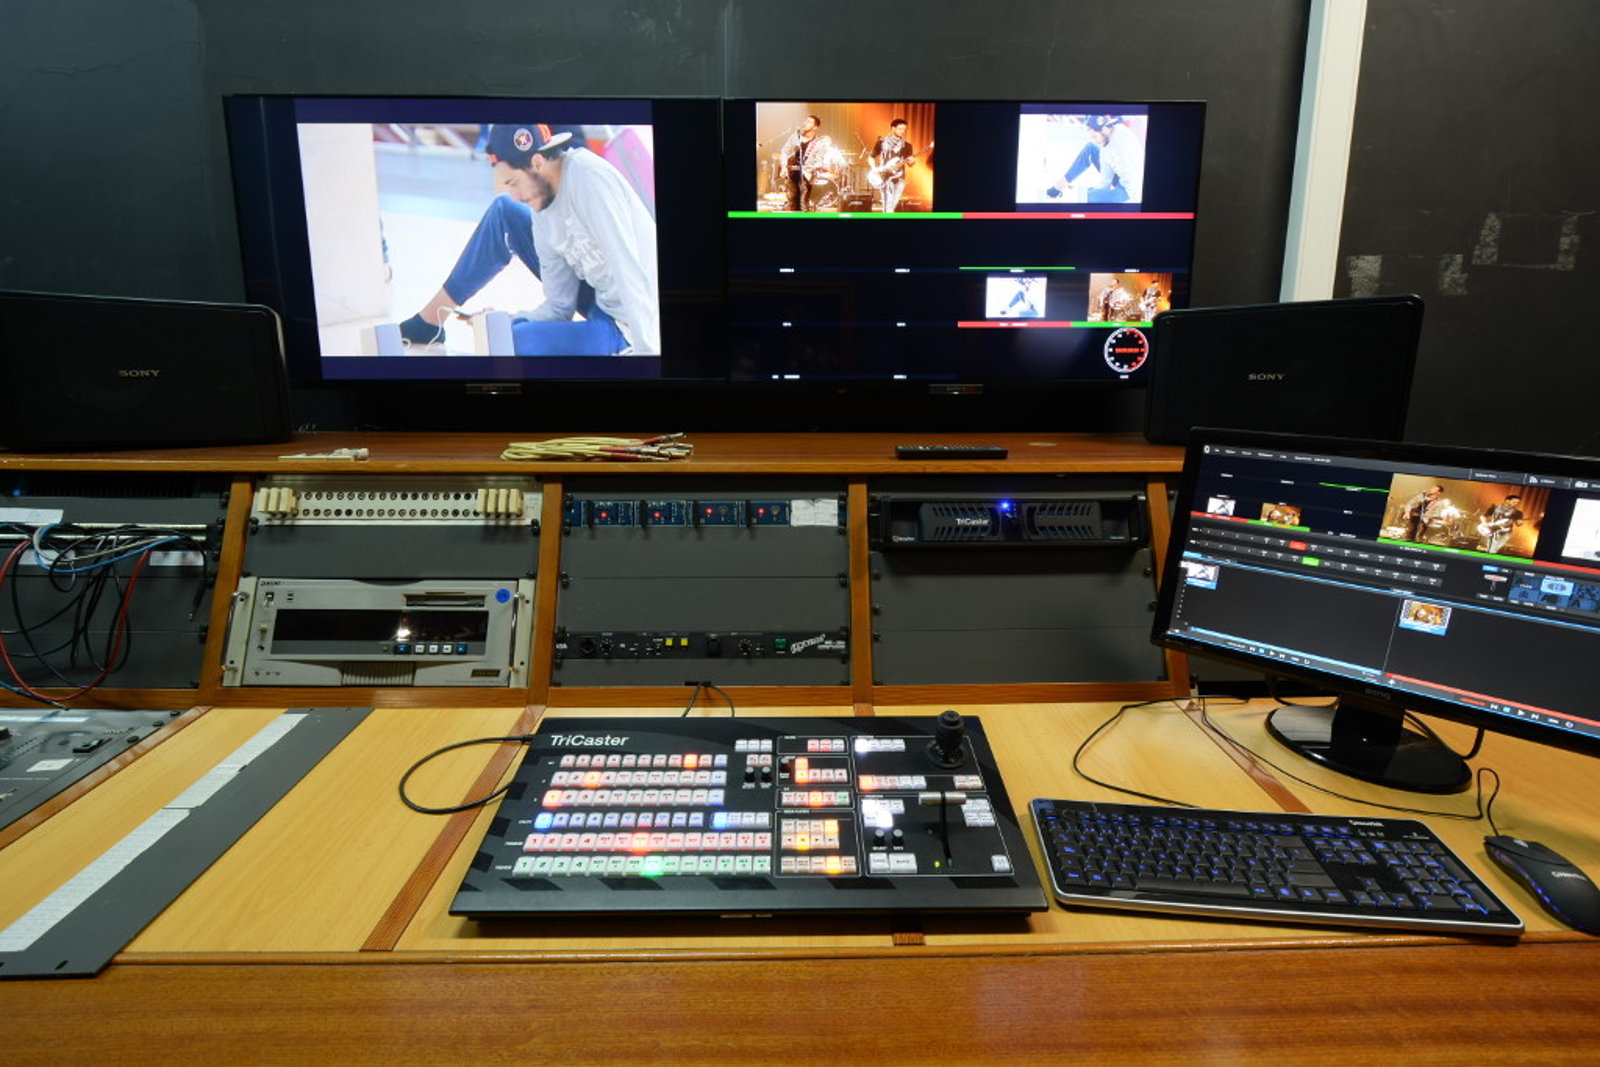 Escuela de Imagen y Sonido de Vigo EISV. Plató profesional de televisión - plató 200 - Sala de control digital de imagen y transmisión